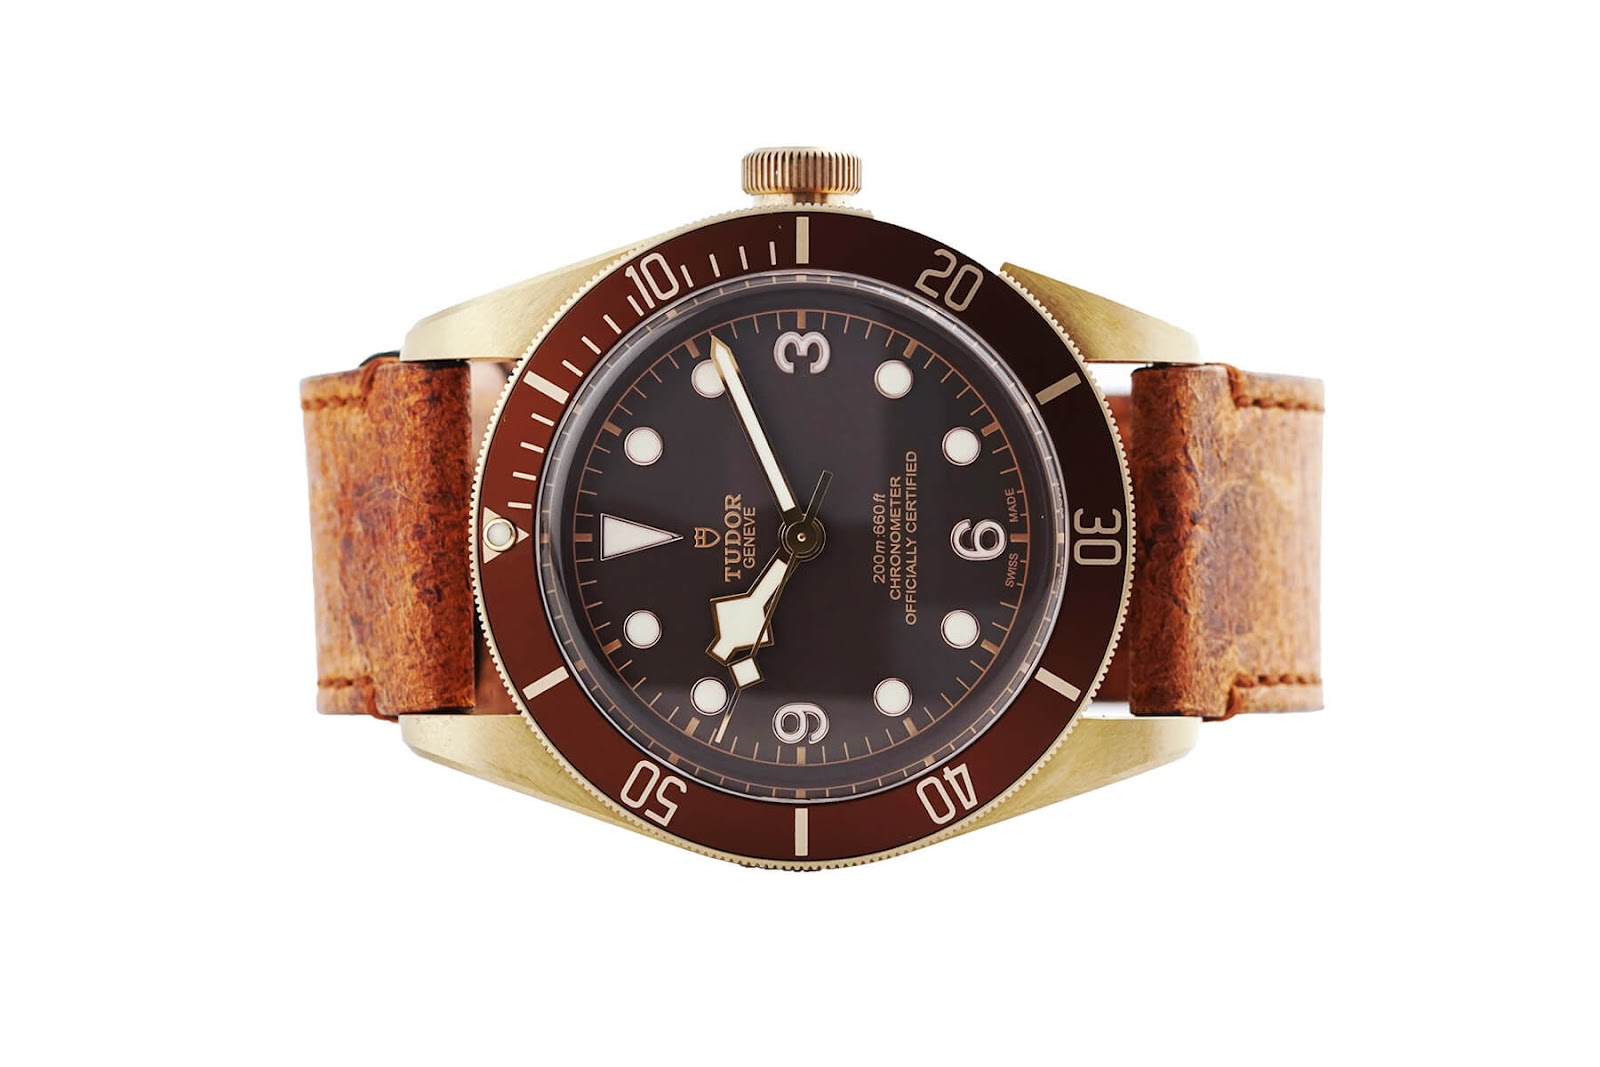 Tudor Black Bay- Chiếc đồng hồ đầu tiên trong những mẫu đồng hồ có thiết kế giống Hublot